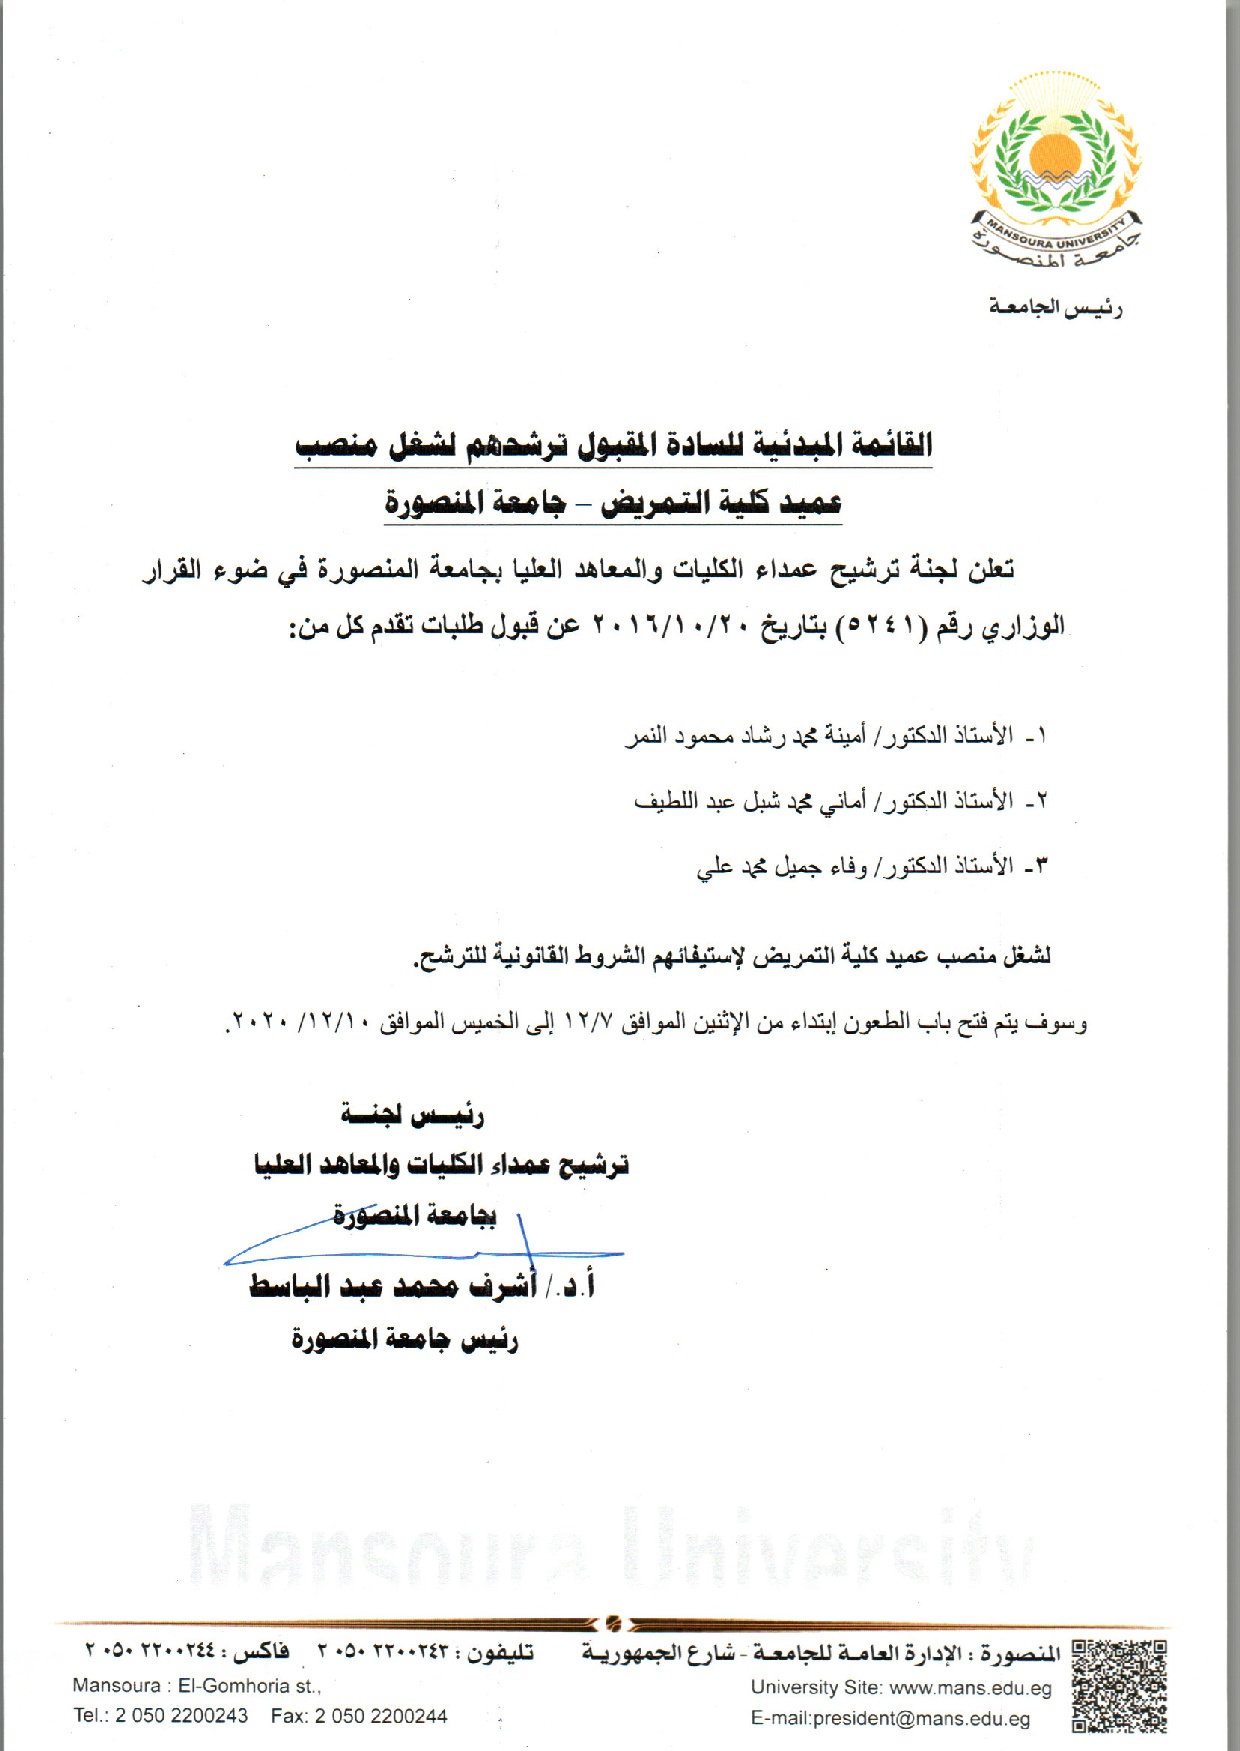 القائمة المبدئية للسادة المقبول ترشحهم لشغل منصب عميد كلية التمريض - جامعة المنصورة